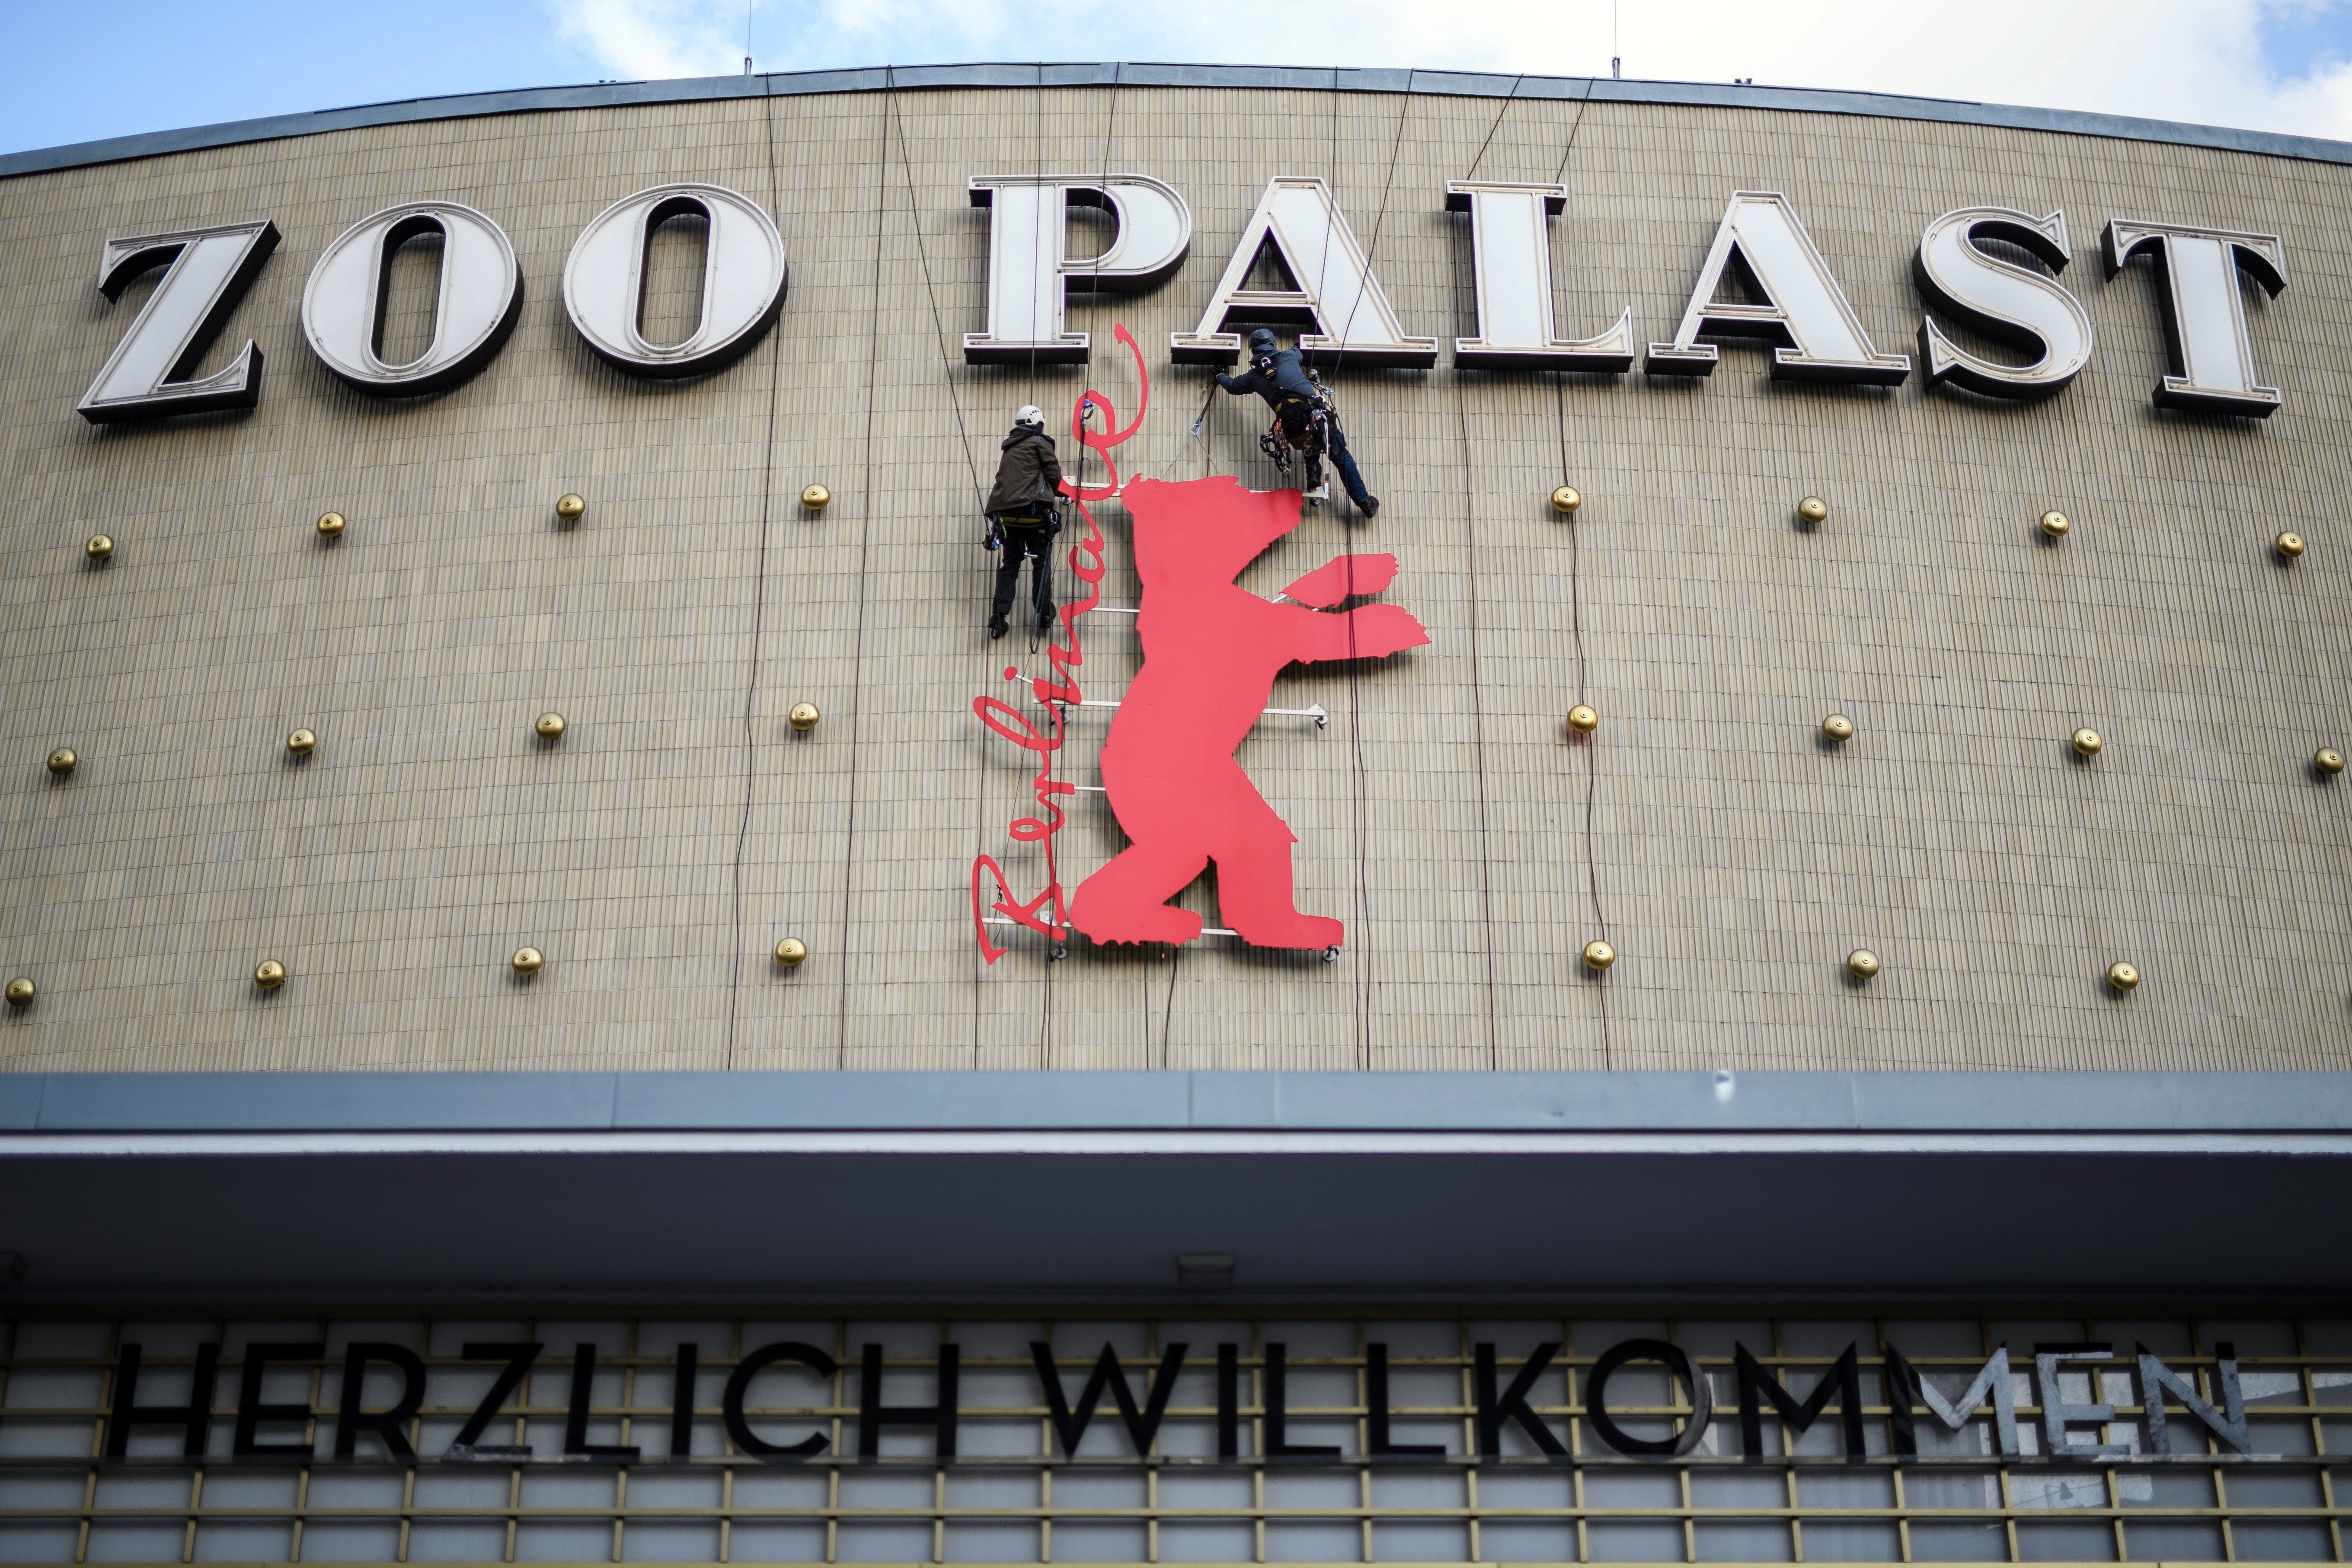  La inauguración de la Berlinale se convirtió en proclama contra los abusos sexuales en el mundo del cine